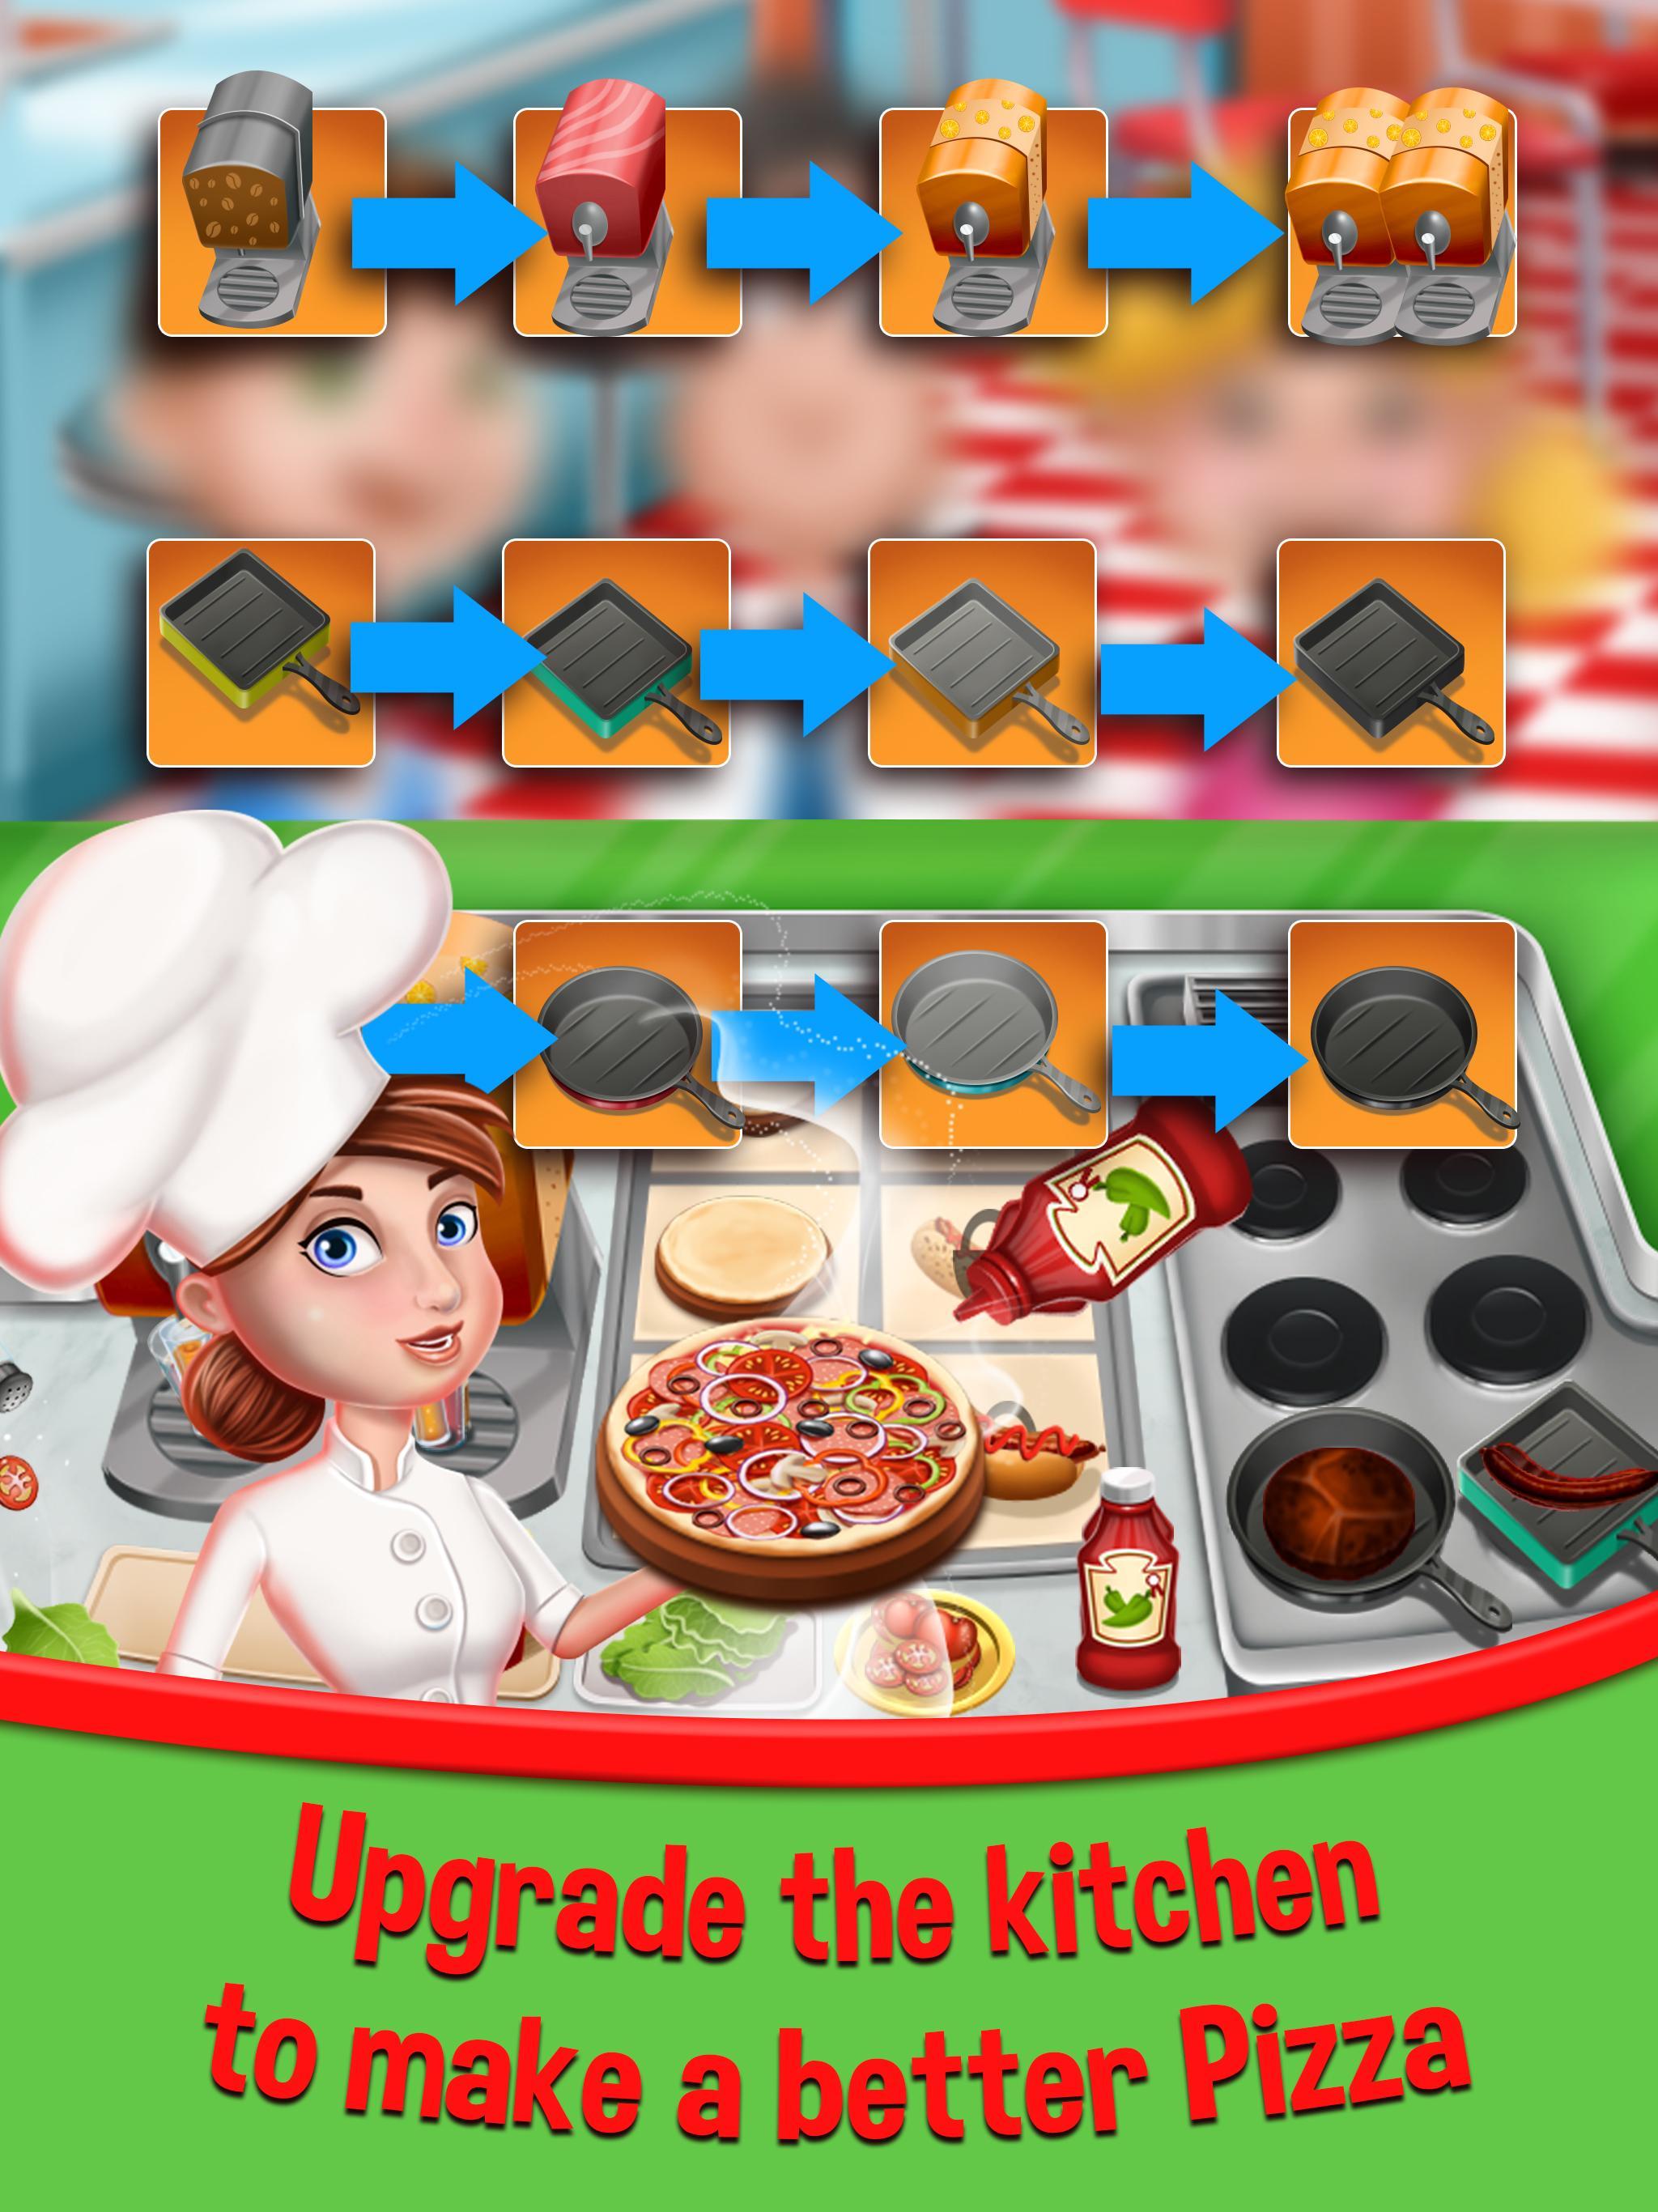 играть онлайн бесплатно готовить пиццу играть онлайн бесплатно фото 65